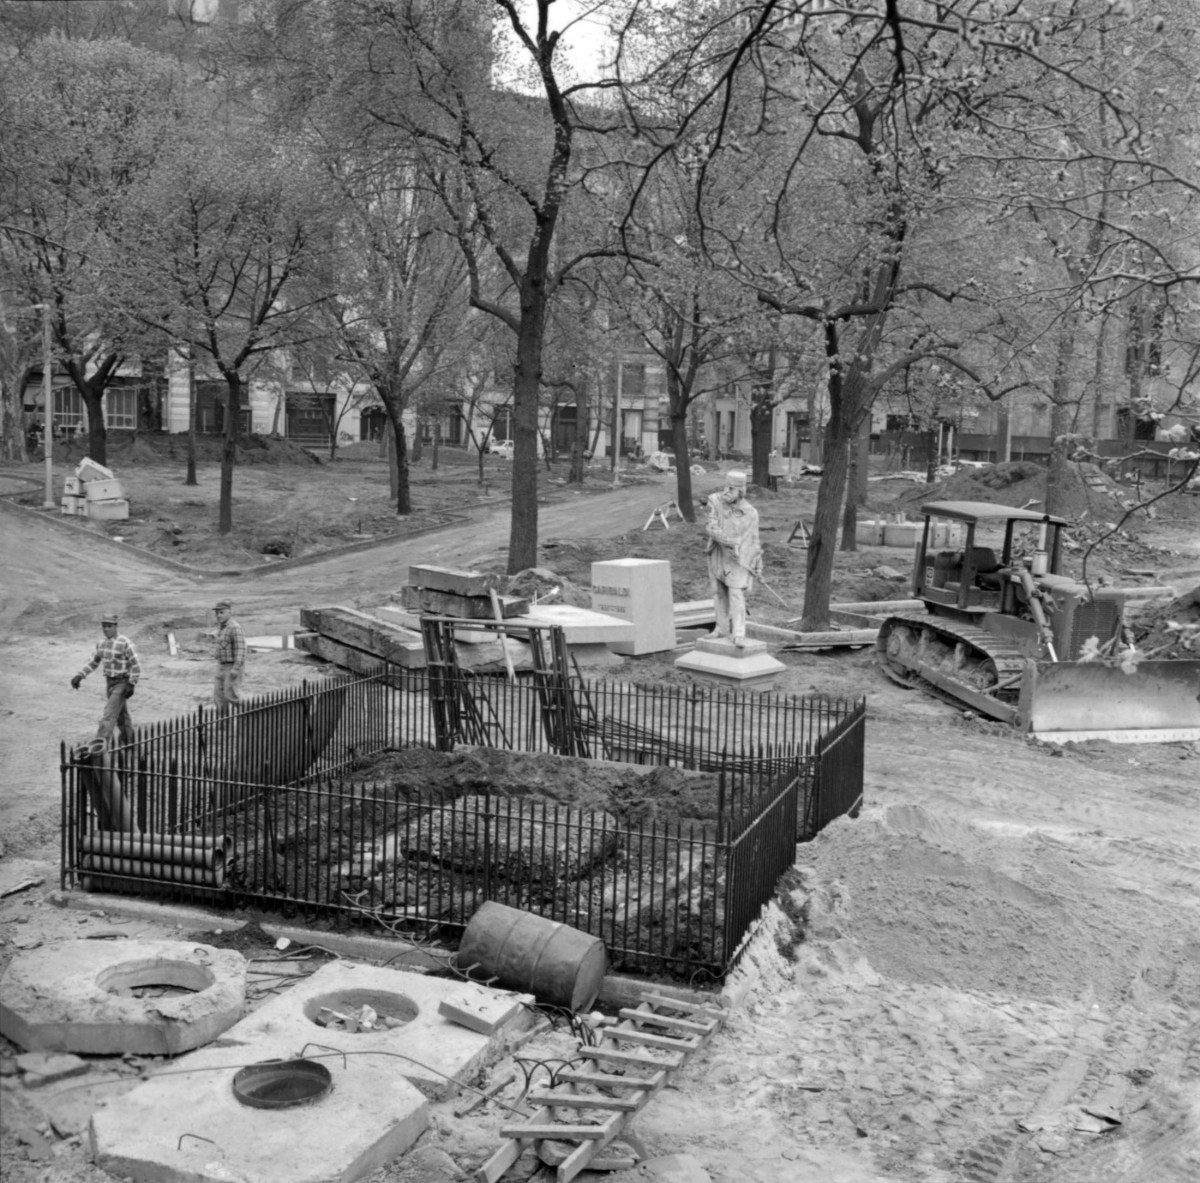 40508_8_1970-04_Relocation of the Garibaldi monument in Washington Square Park, glass vessel & Italian newspaper found